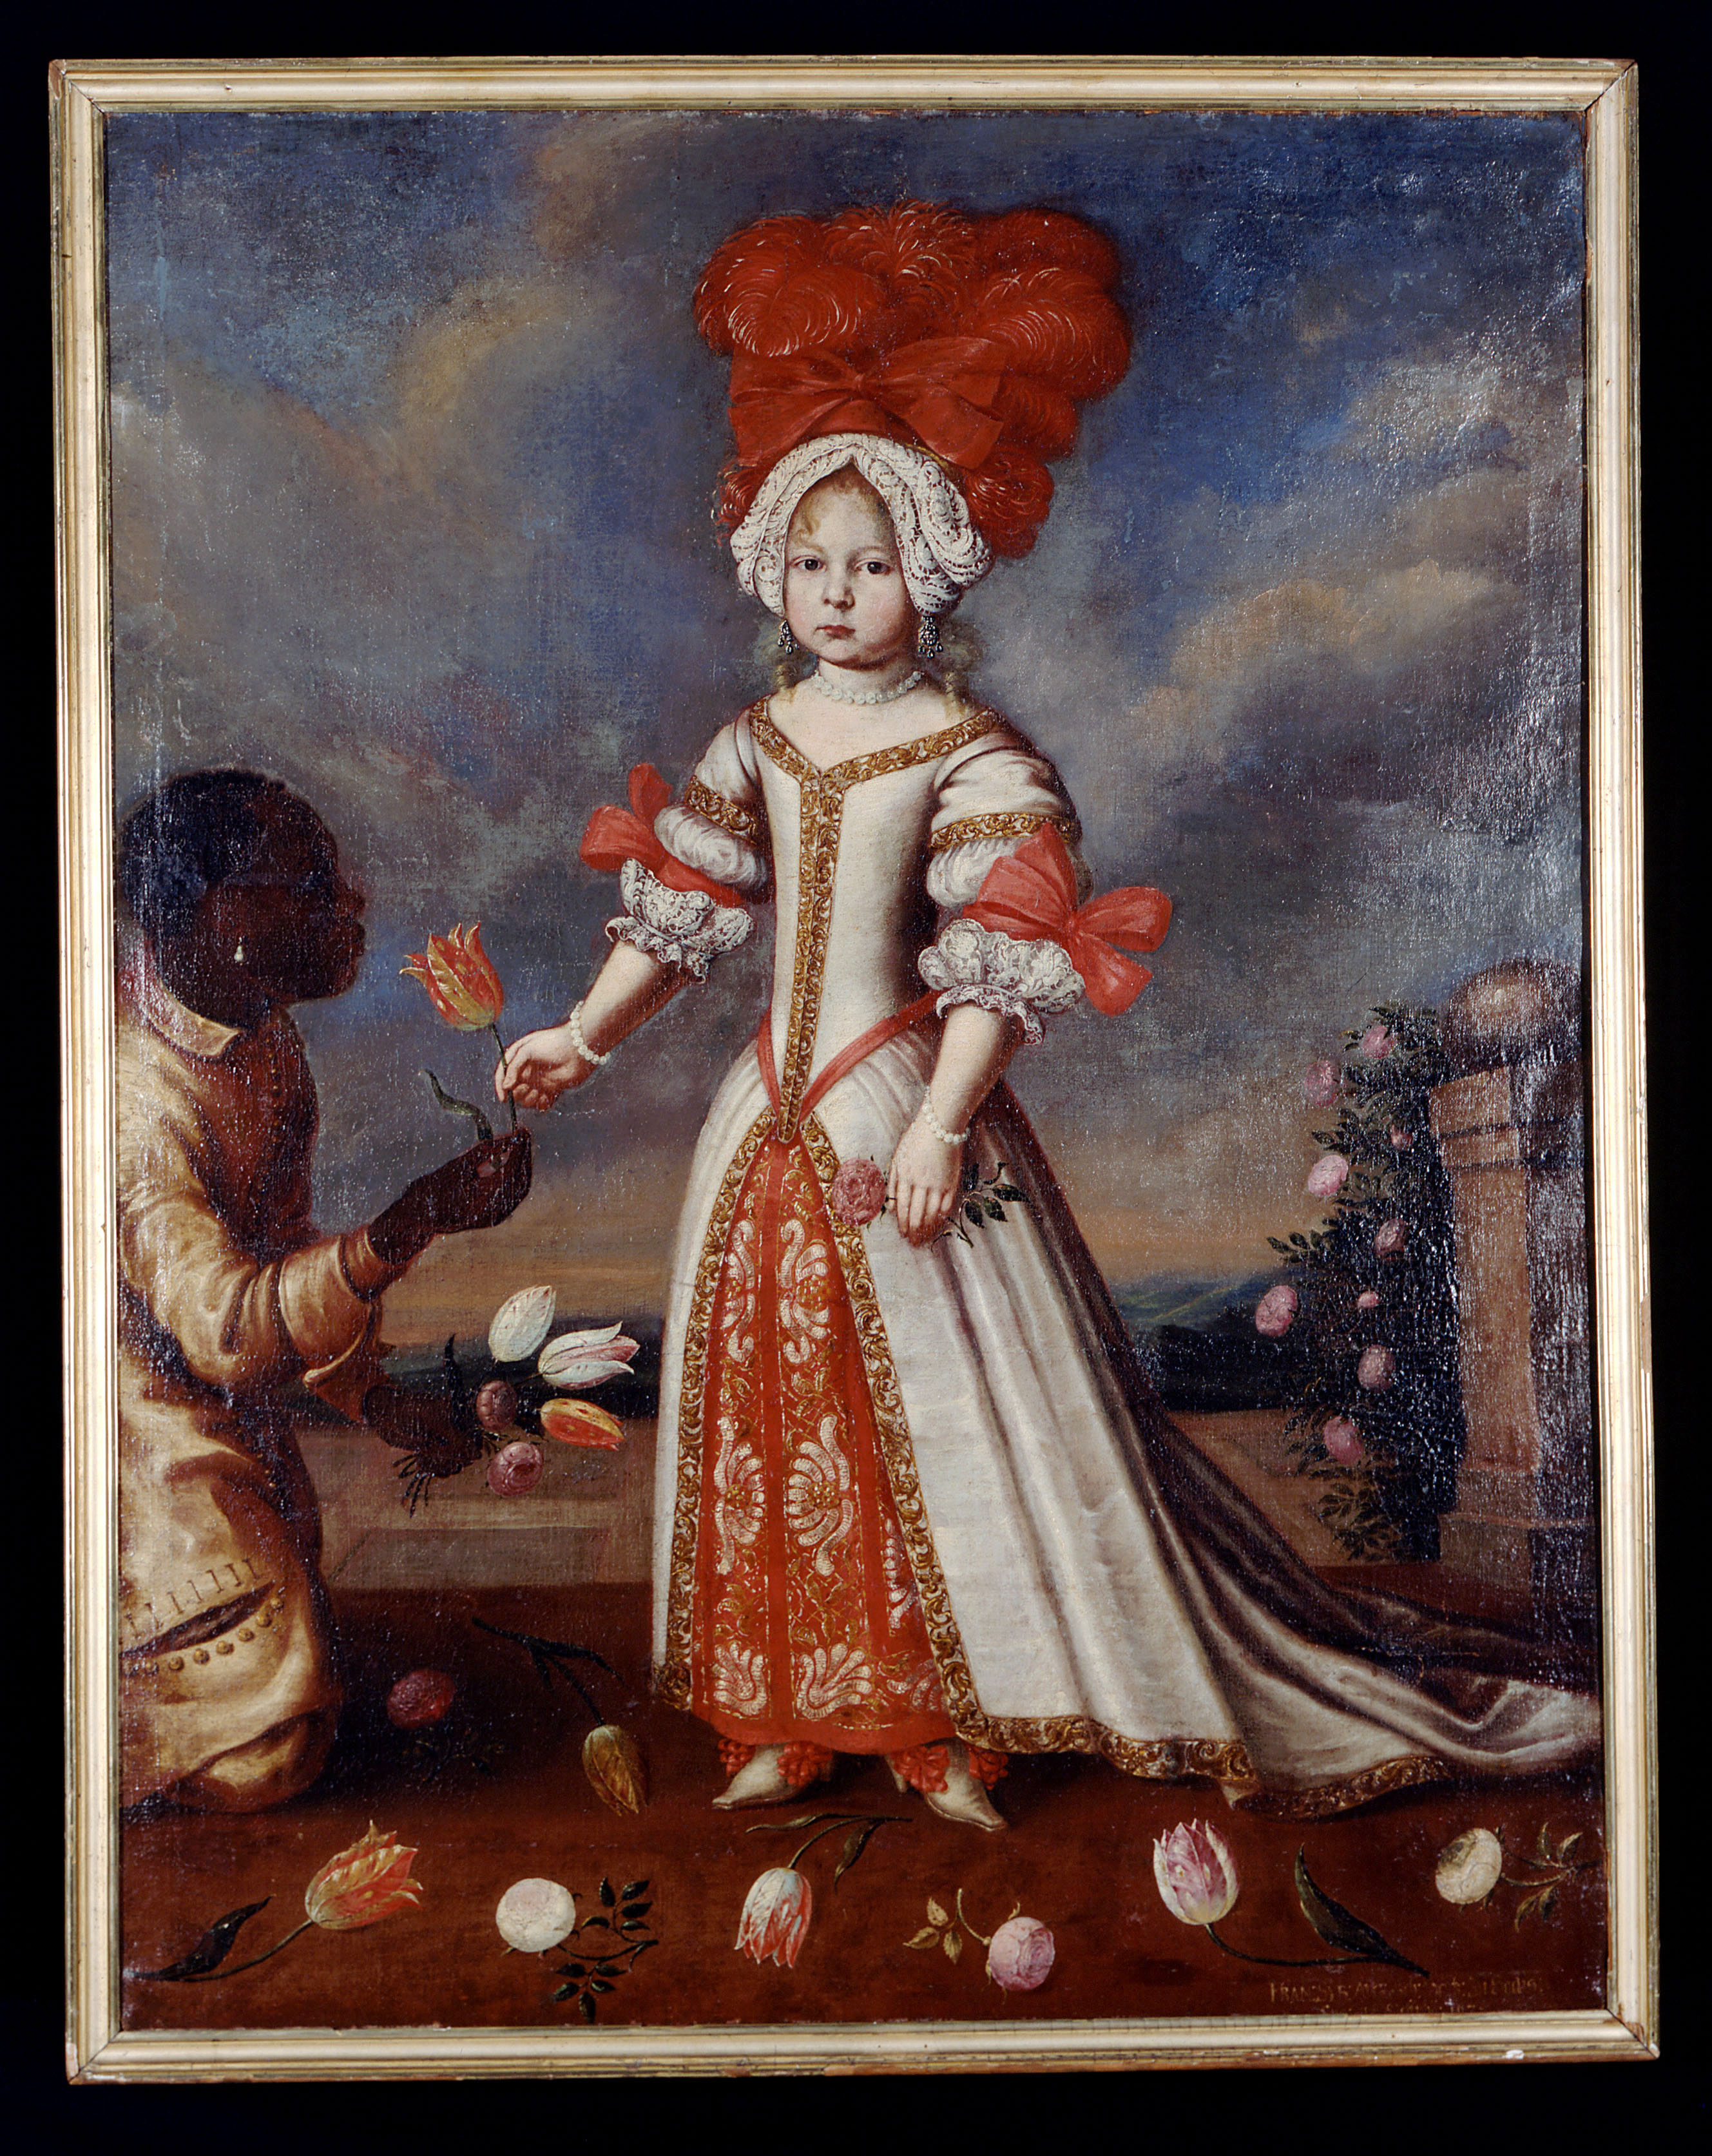 Franziska Sibylla Augusta von Sachsen-Lauenburg painting